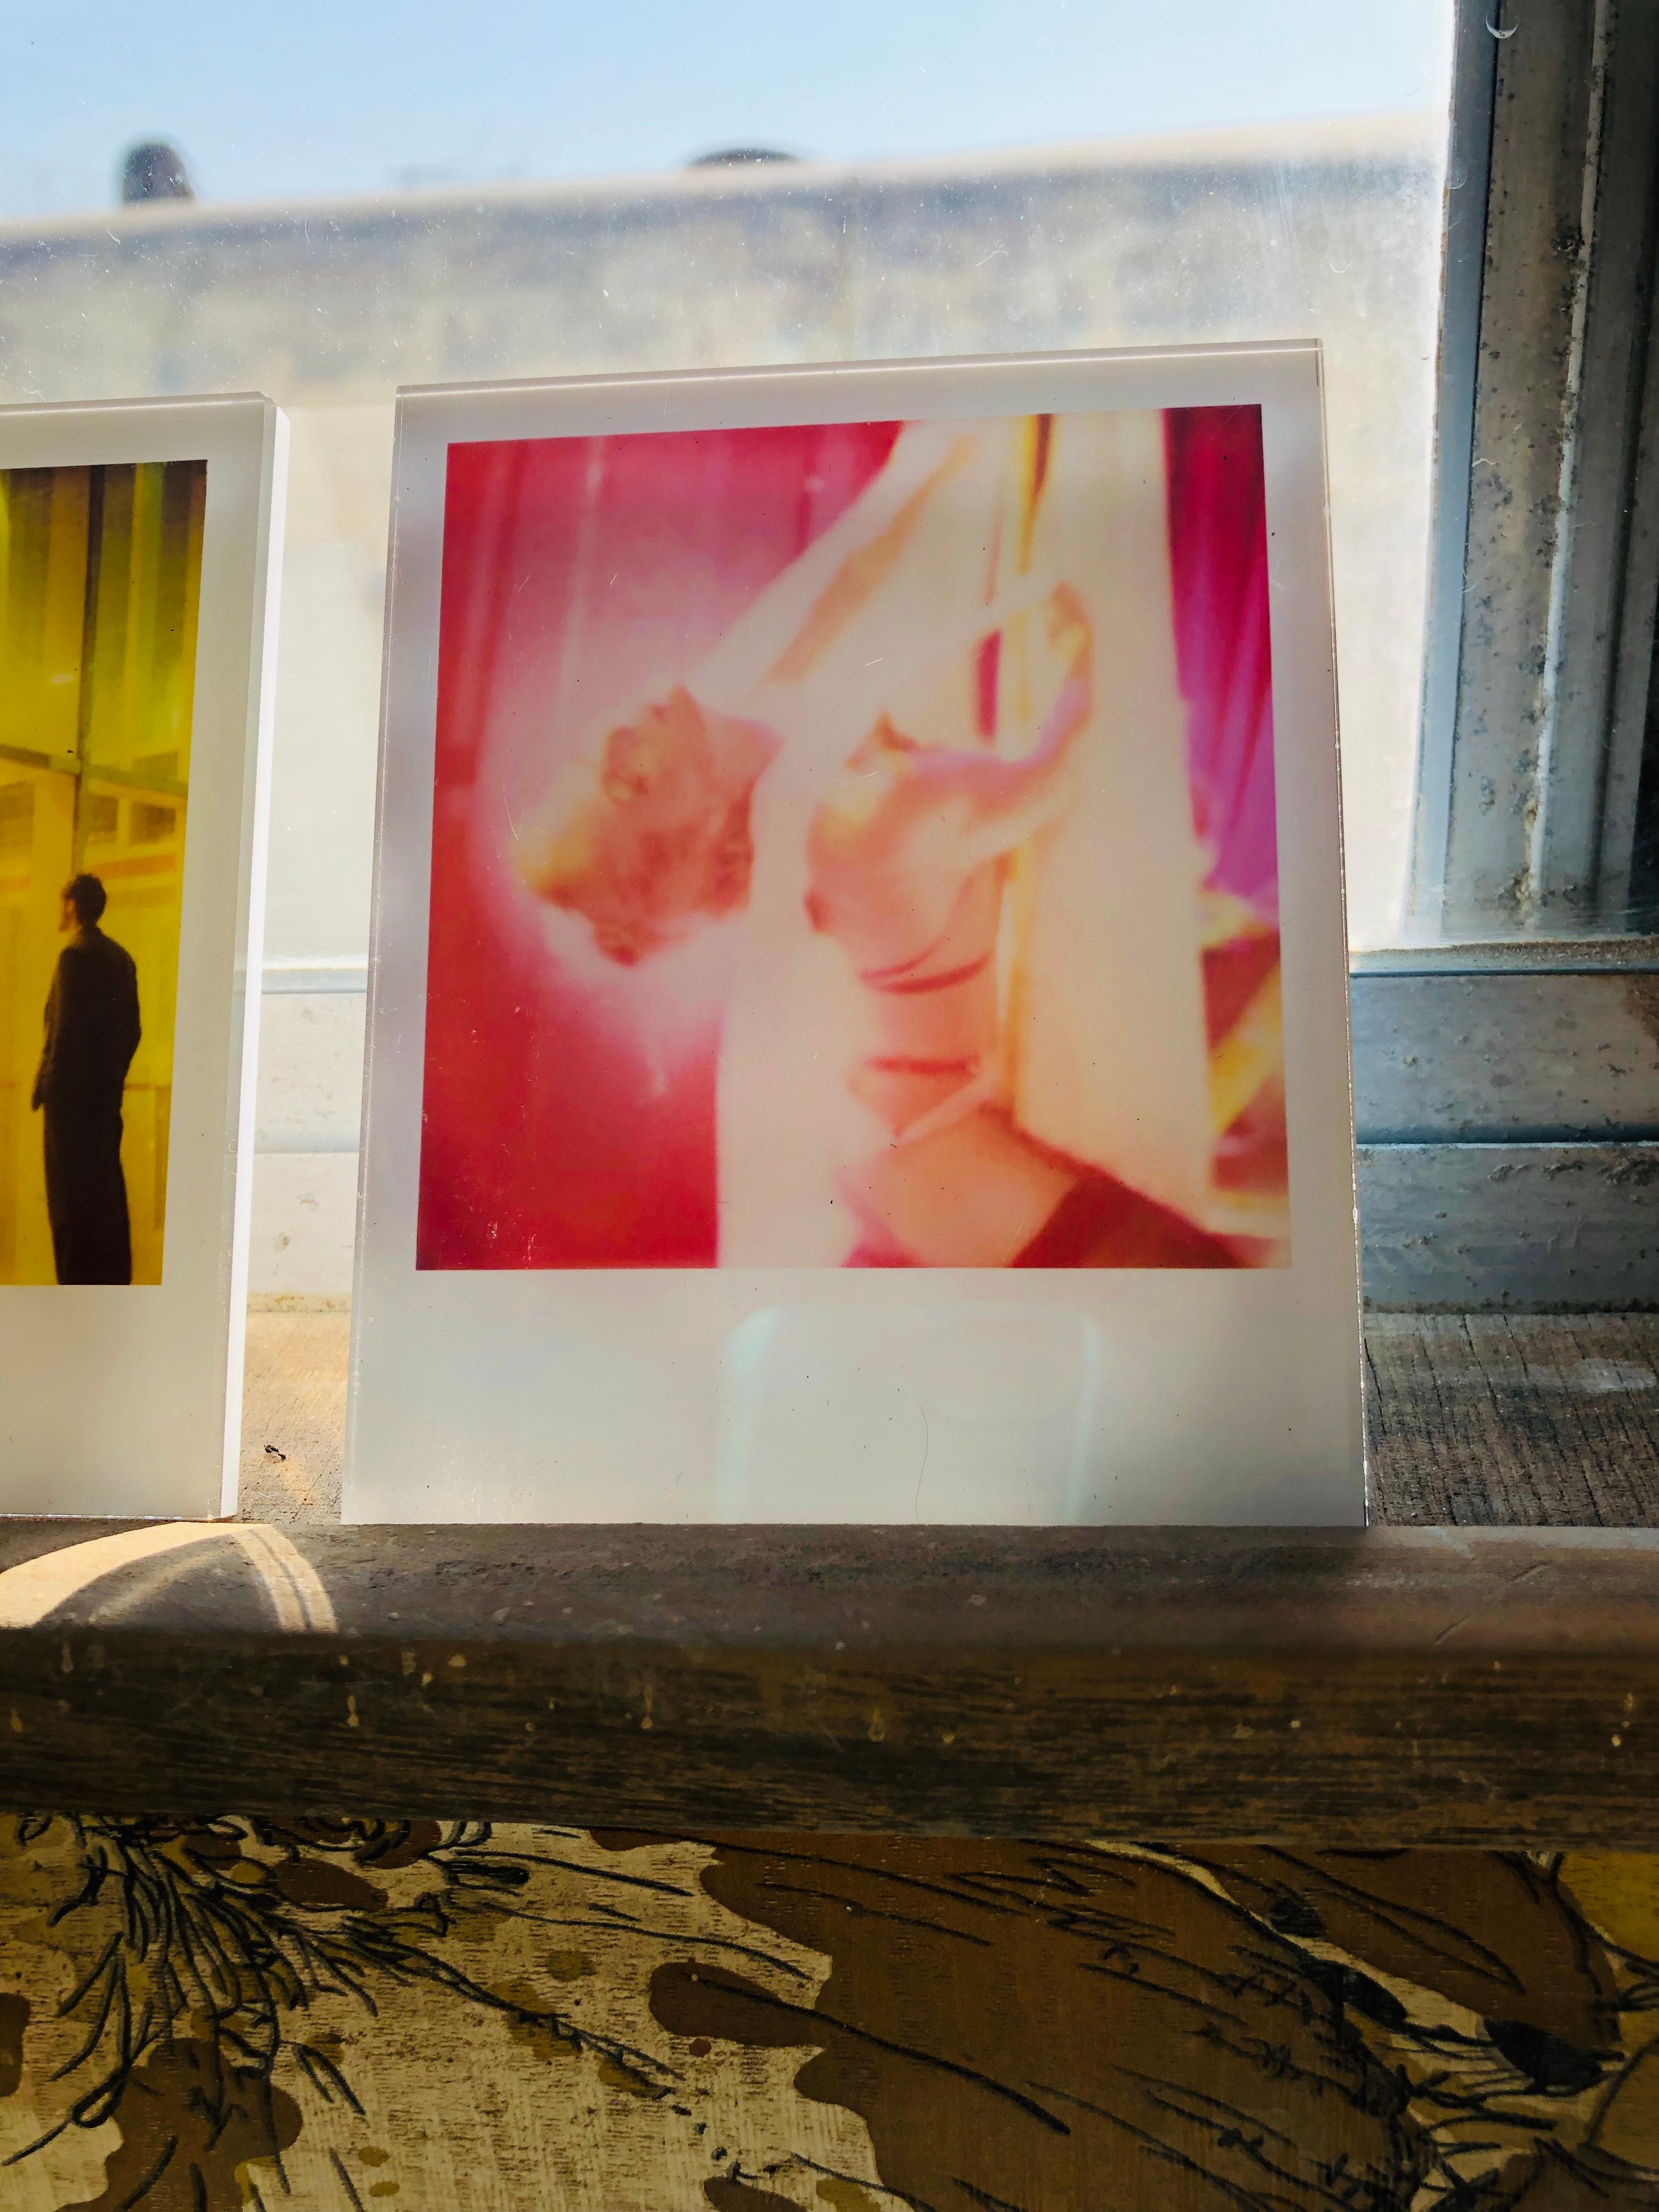 Die Minis von Stefanie Schneider
Die Tänzerin" (Aufenthalt), 2006

verso signiert und Signaturmarke
Digitale Lambda-Farbfotografien auf der Grundlage eines Polaroids

aus dem Film 'Stay' von Marc Forster, in dem Ewan McGregor, Naomi Watts und Ryan